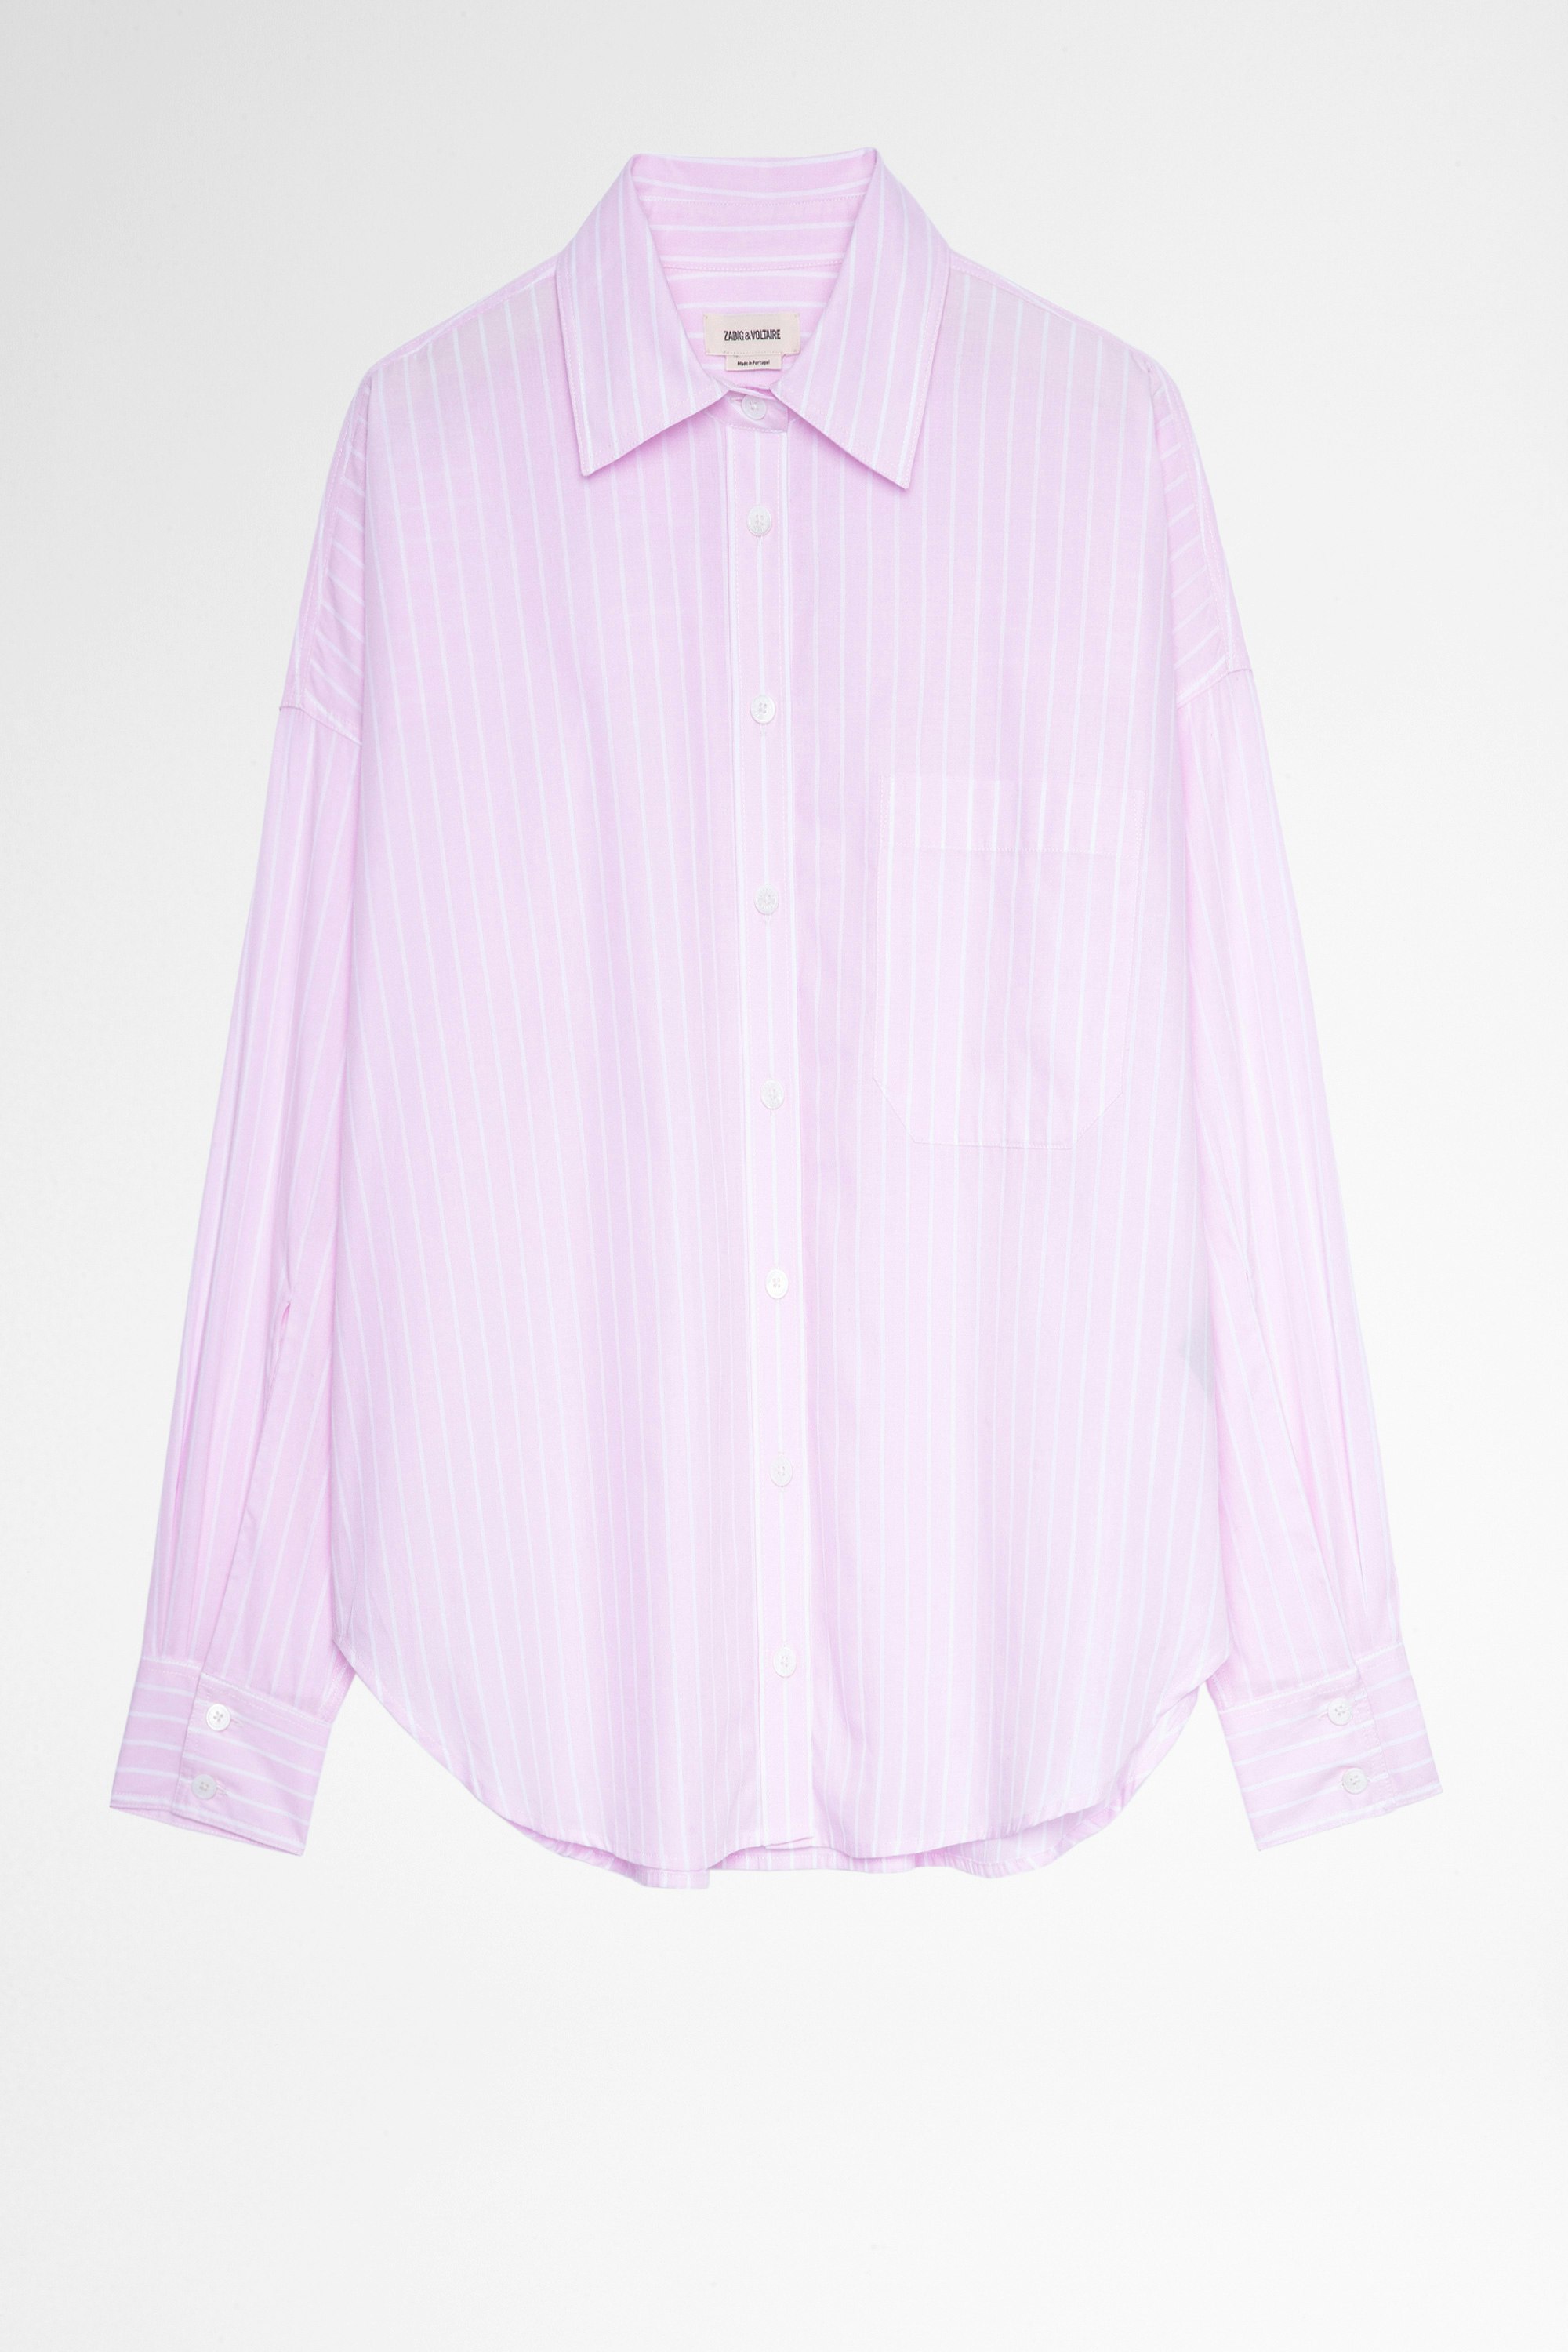 Camisa Tamara Camisa de mujer de algodón rosa a rayas con adorno Amour. Confeccionado con fibras procedentes de la agricultura ecológica.